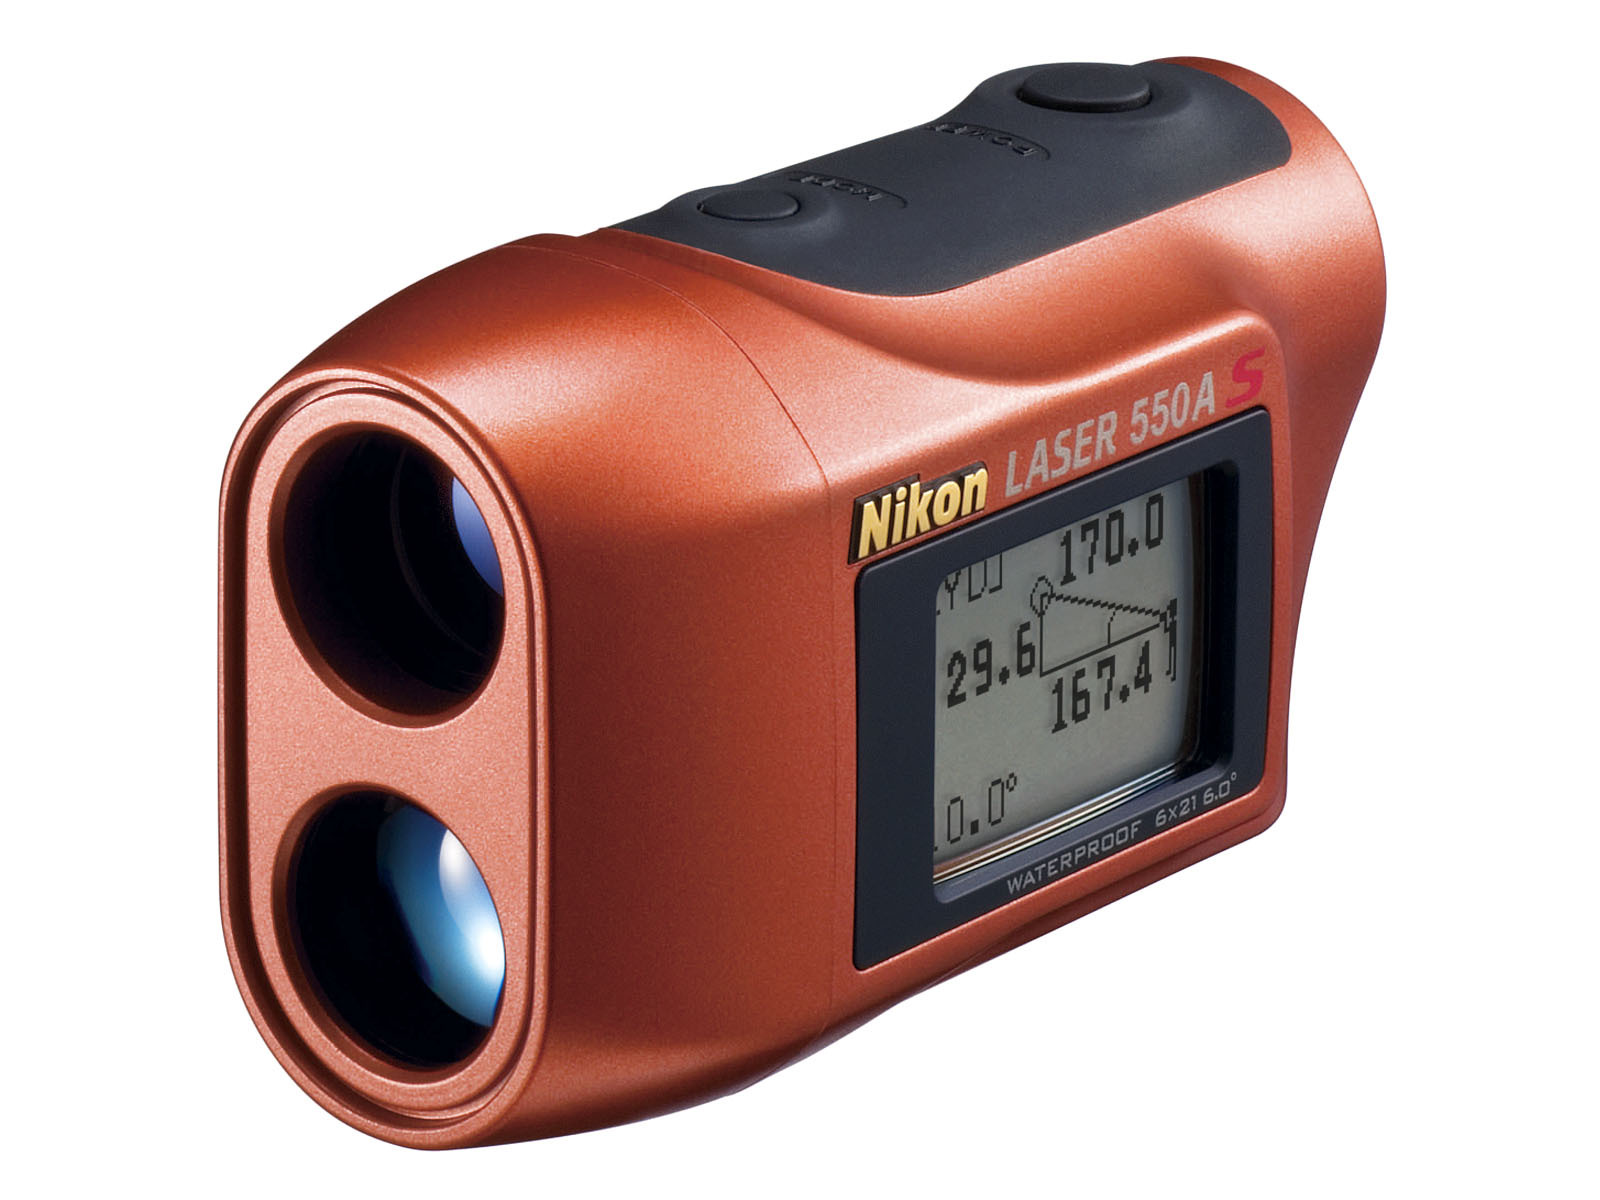 Ống nhòm Nikon Laser 550A S - Ống nhòm đo khoảng cách